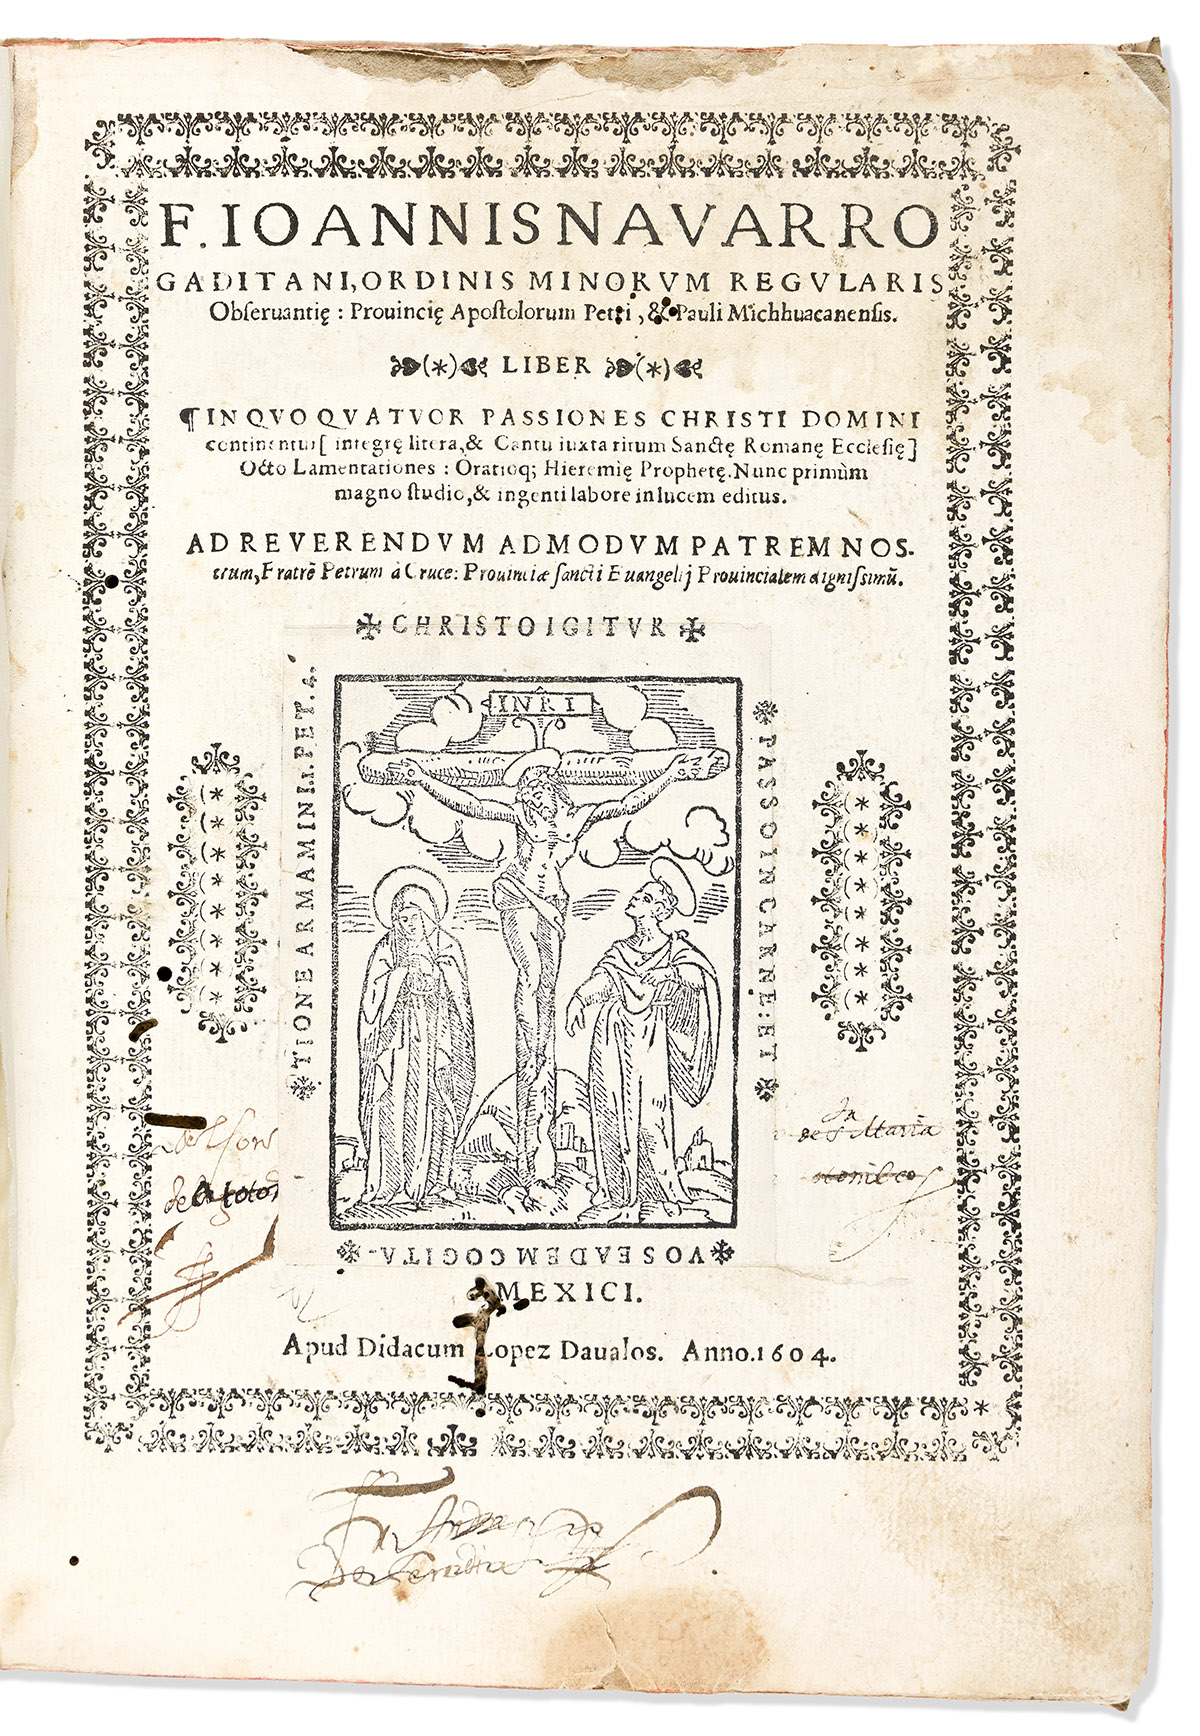 (MEXICAN IMPRINT--1604.) Juan Navarro. Liber in quo quatuor passiones Christi Domini continentur.